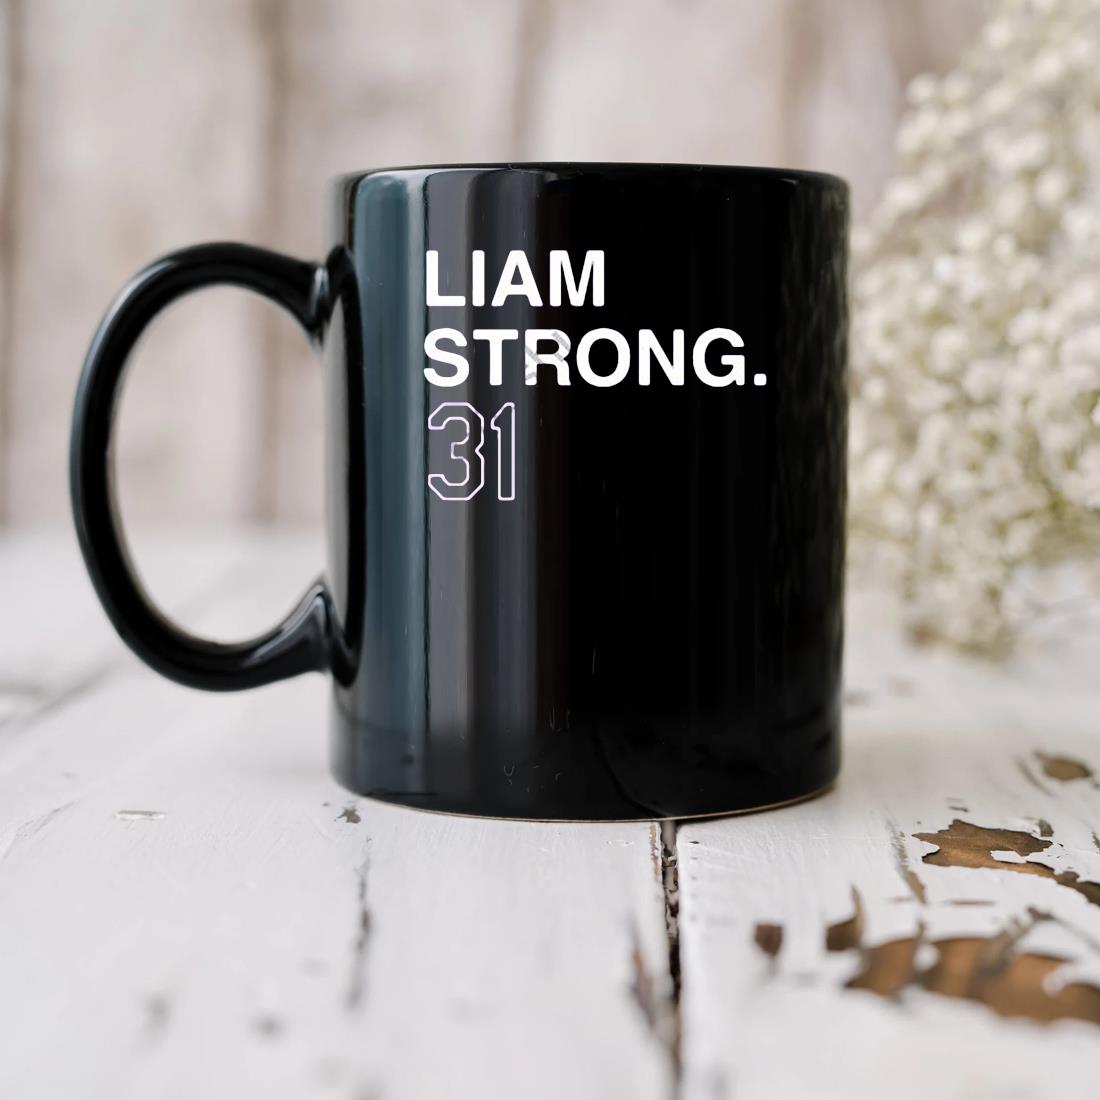 Liam Strong 31 Mug biu